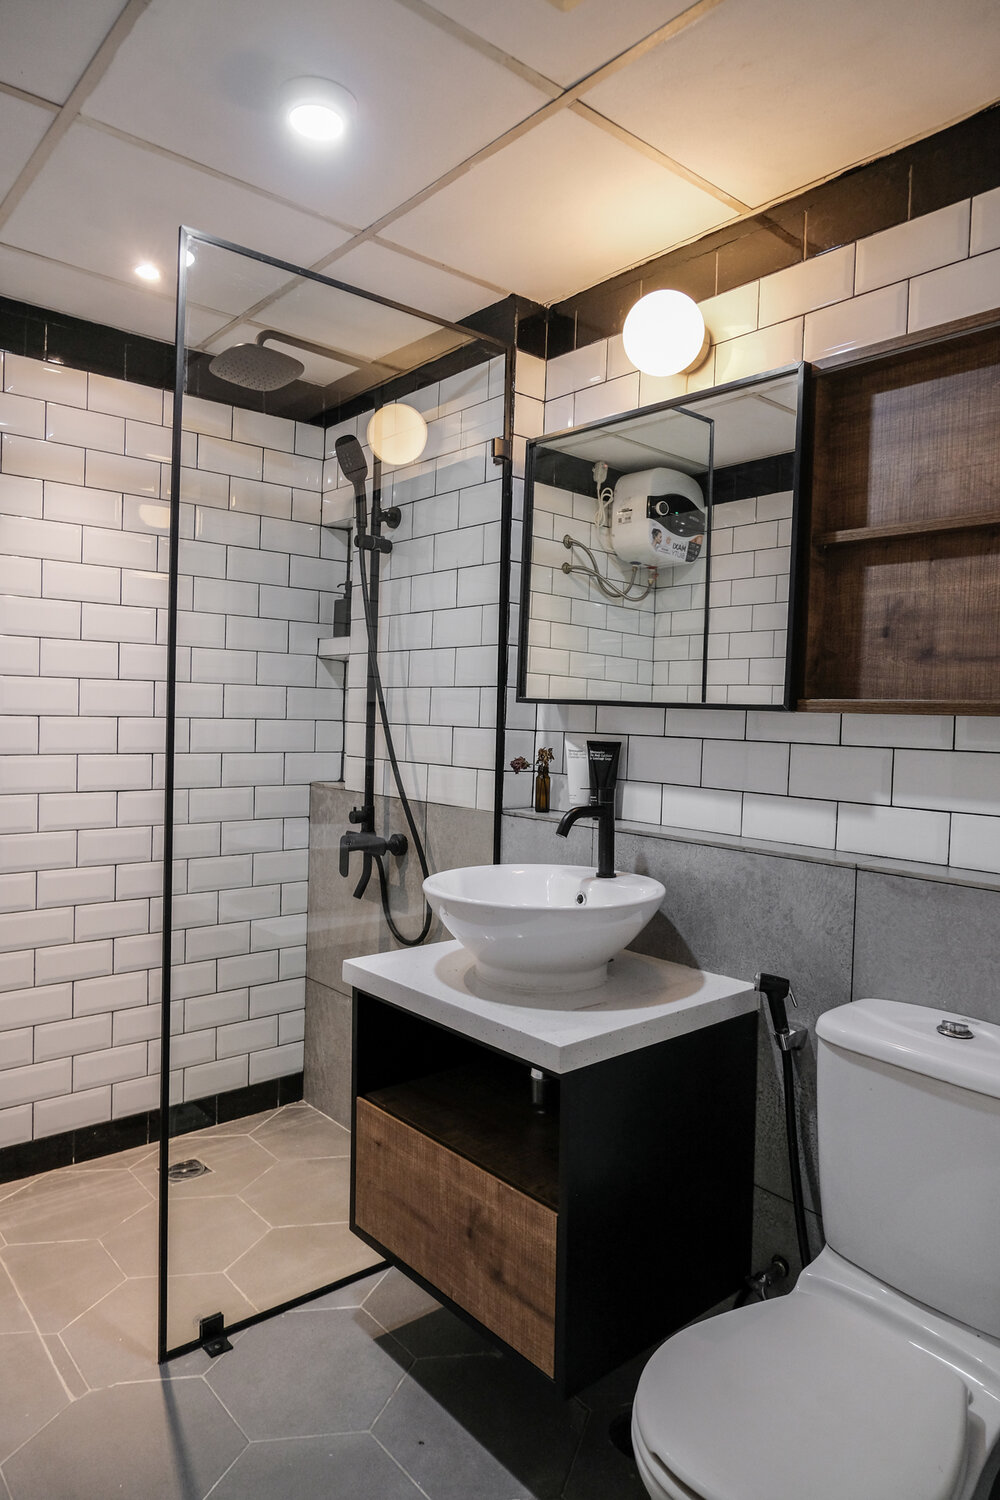 Phòng tắm là sự kết hợp của gạch hình lục giác lát sàn với gạch thẻ metro ốp tường tương tự backsplash. Tủ lưu trữ kết hợp gương soi tiện ích trên bồn rửa, cửa kính trong suốt giúp phân vùng buồng tắm và toilet mà vẫn tạo cảm giác rộng rãi. 